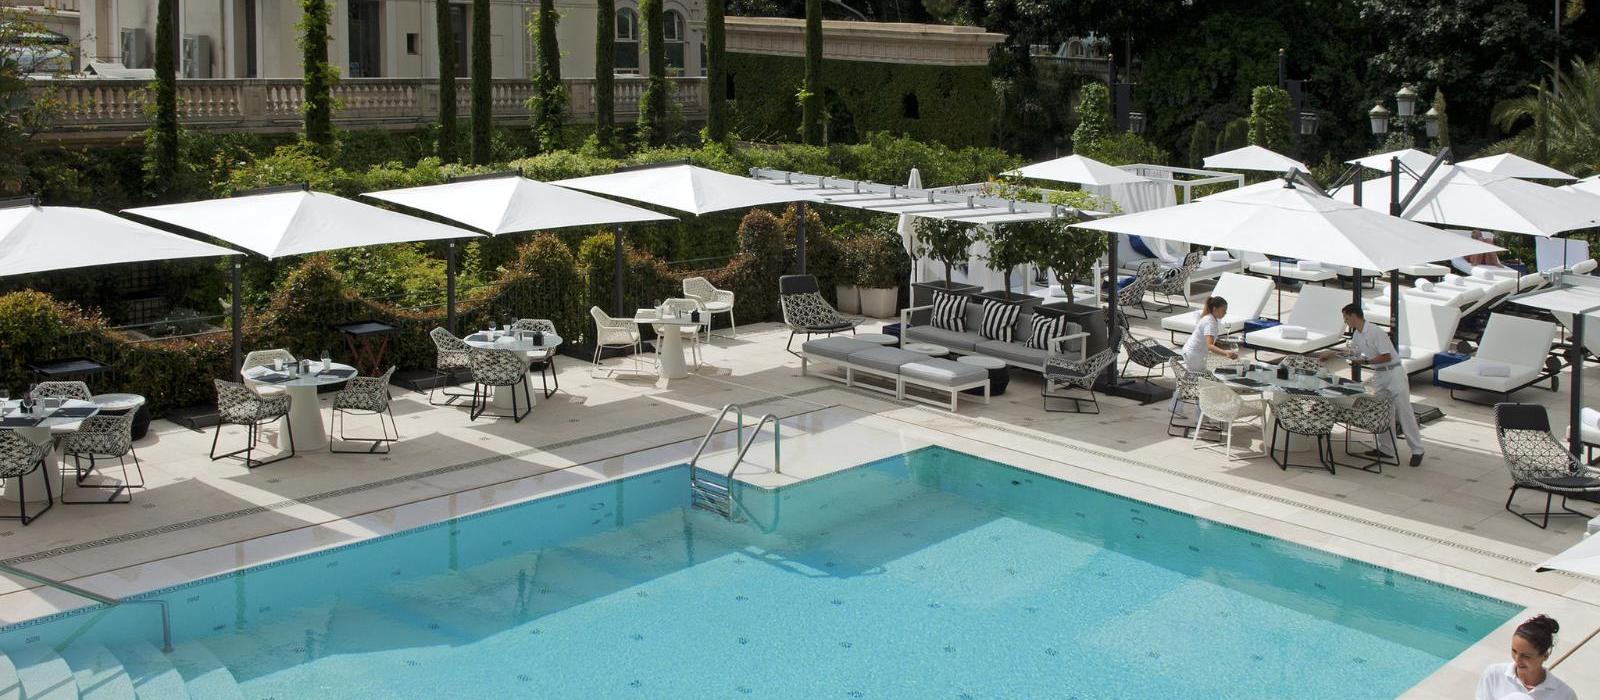 蒙特卡洛大都会酒店(Hotel Metropole Monte-Carlo) 泳池图片  www.lhw.cn